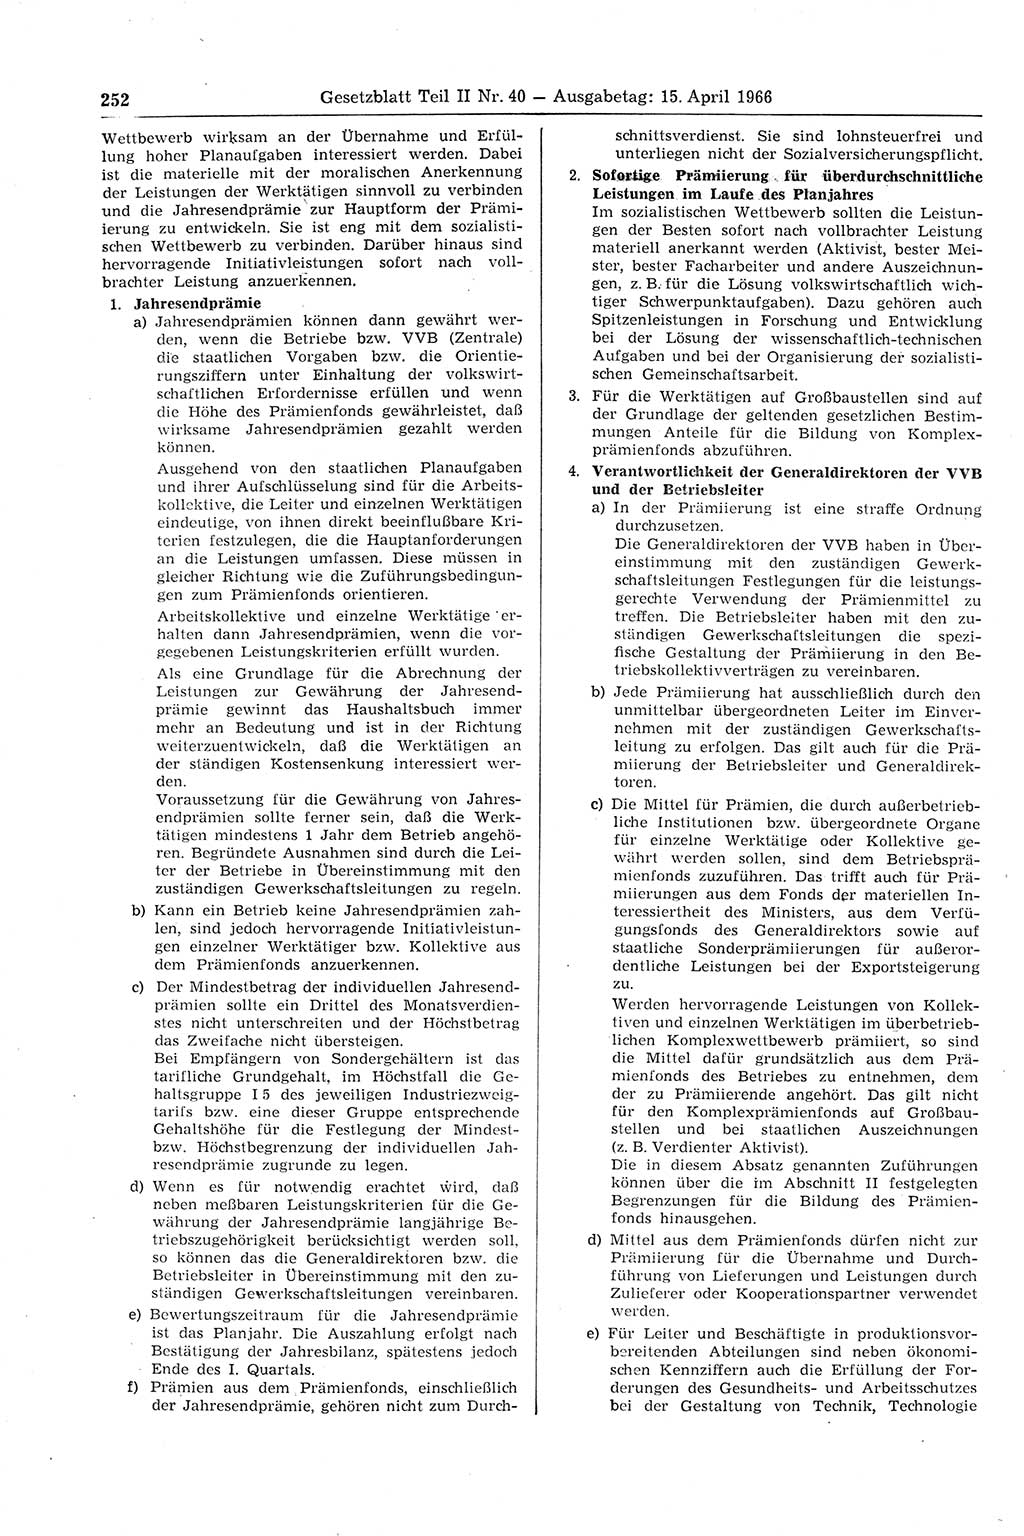 Gesetzblatt (GBl.) der Deutschen Demokratischen Republik (DDR) Teil ⅠⅠ 1966, Seite 252 (GBl. DDR ⅠⅠ 1966, S. 252)